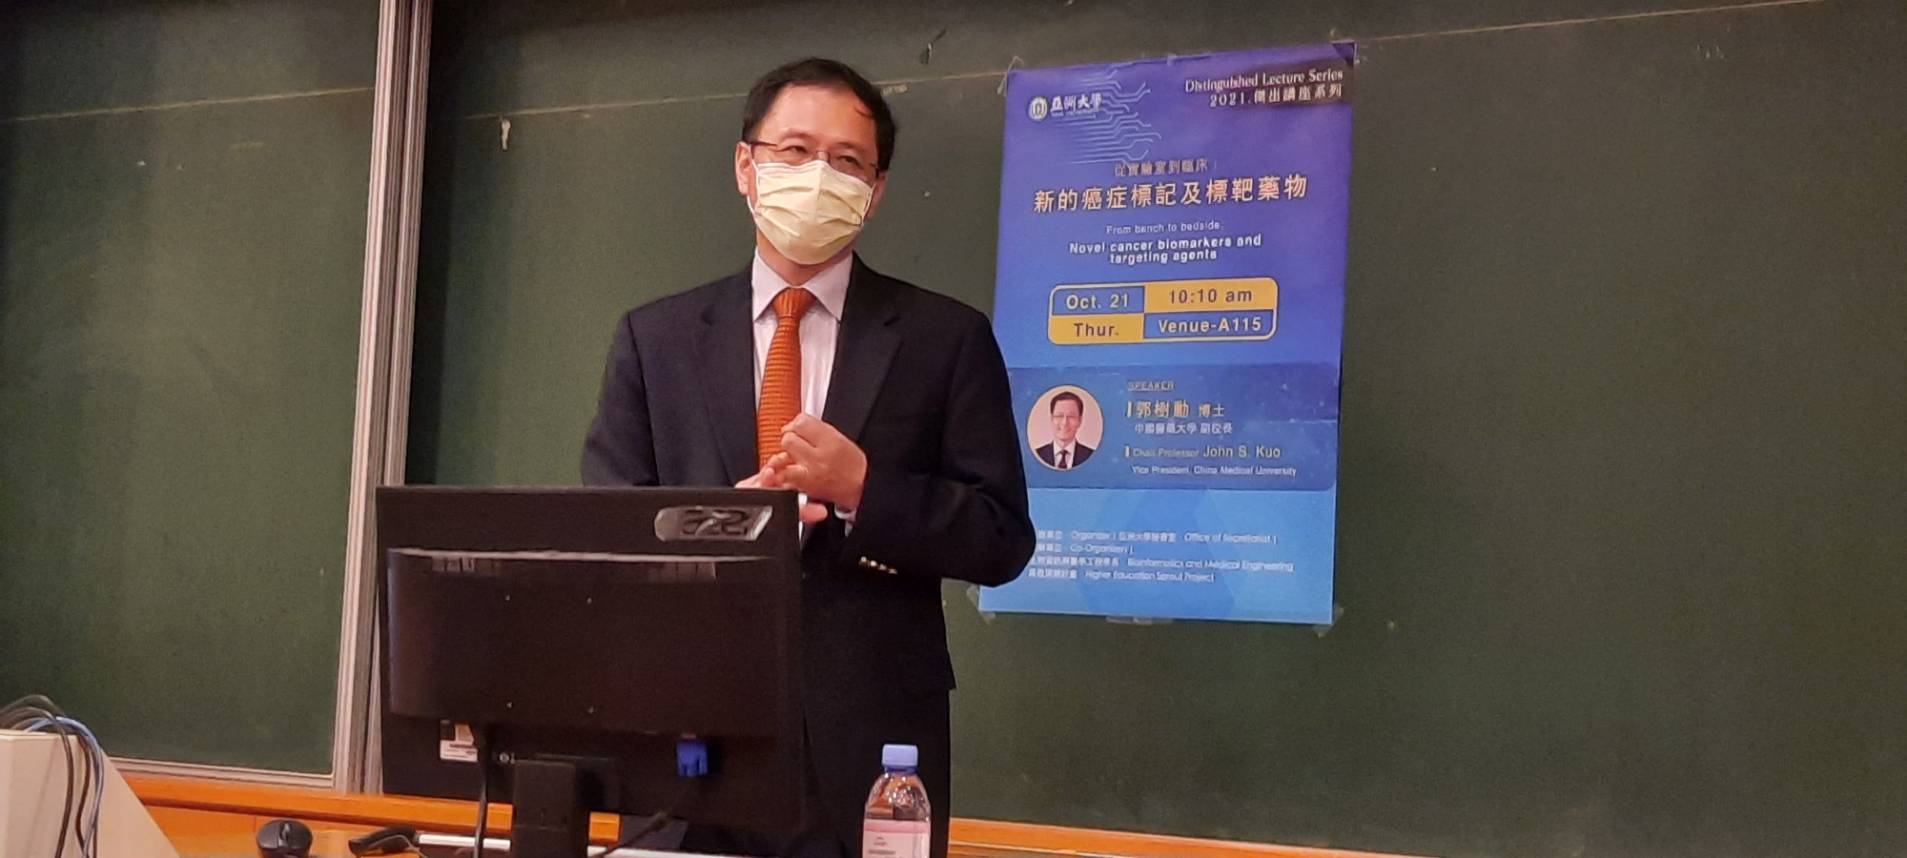 中醫大副校長郭樹勳演講「從實驗室到臨床：新的癌症標記及標靶藥物」。